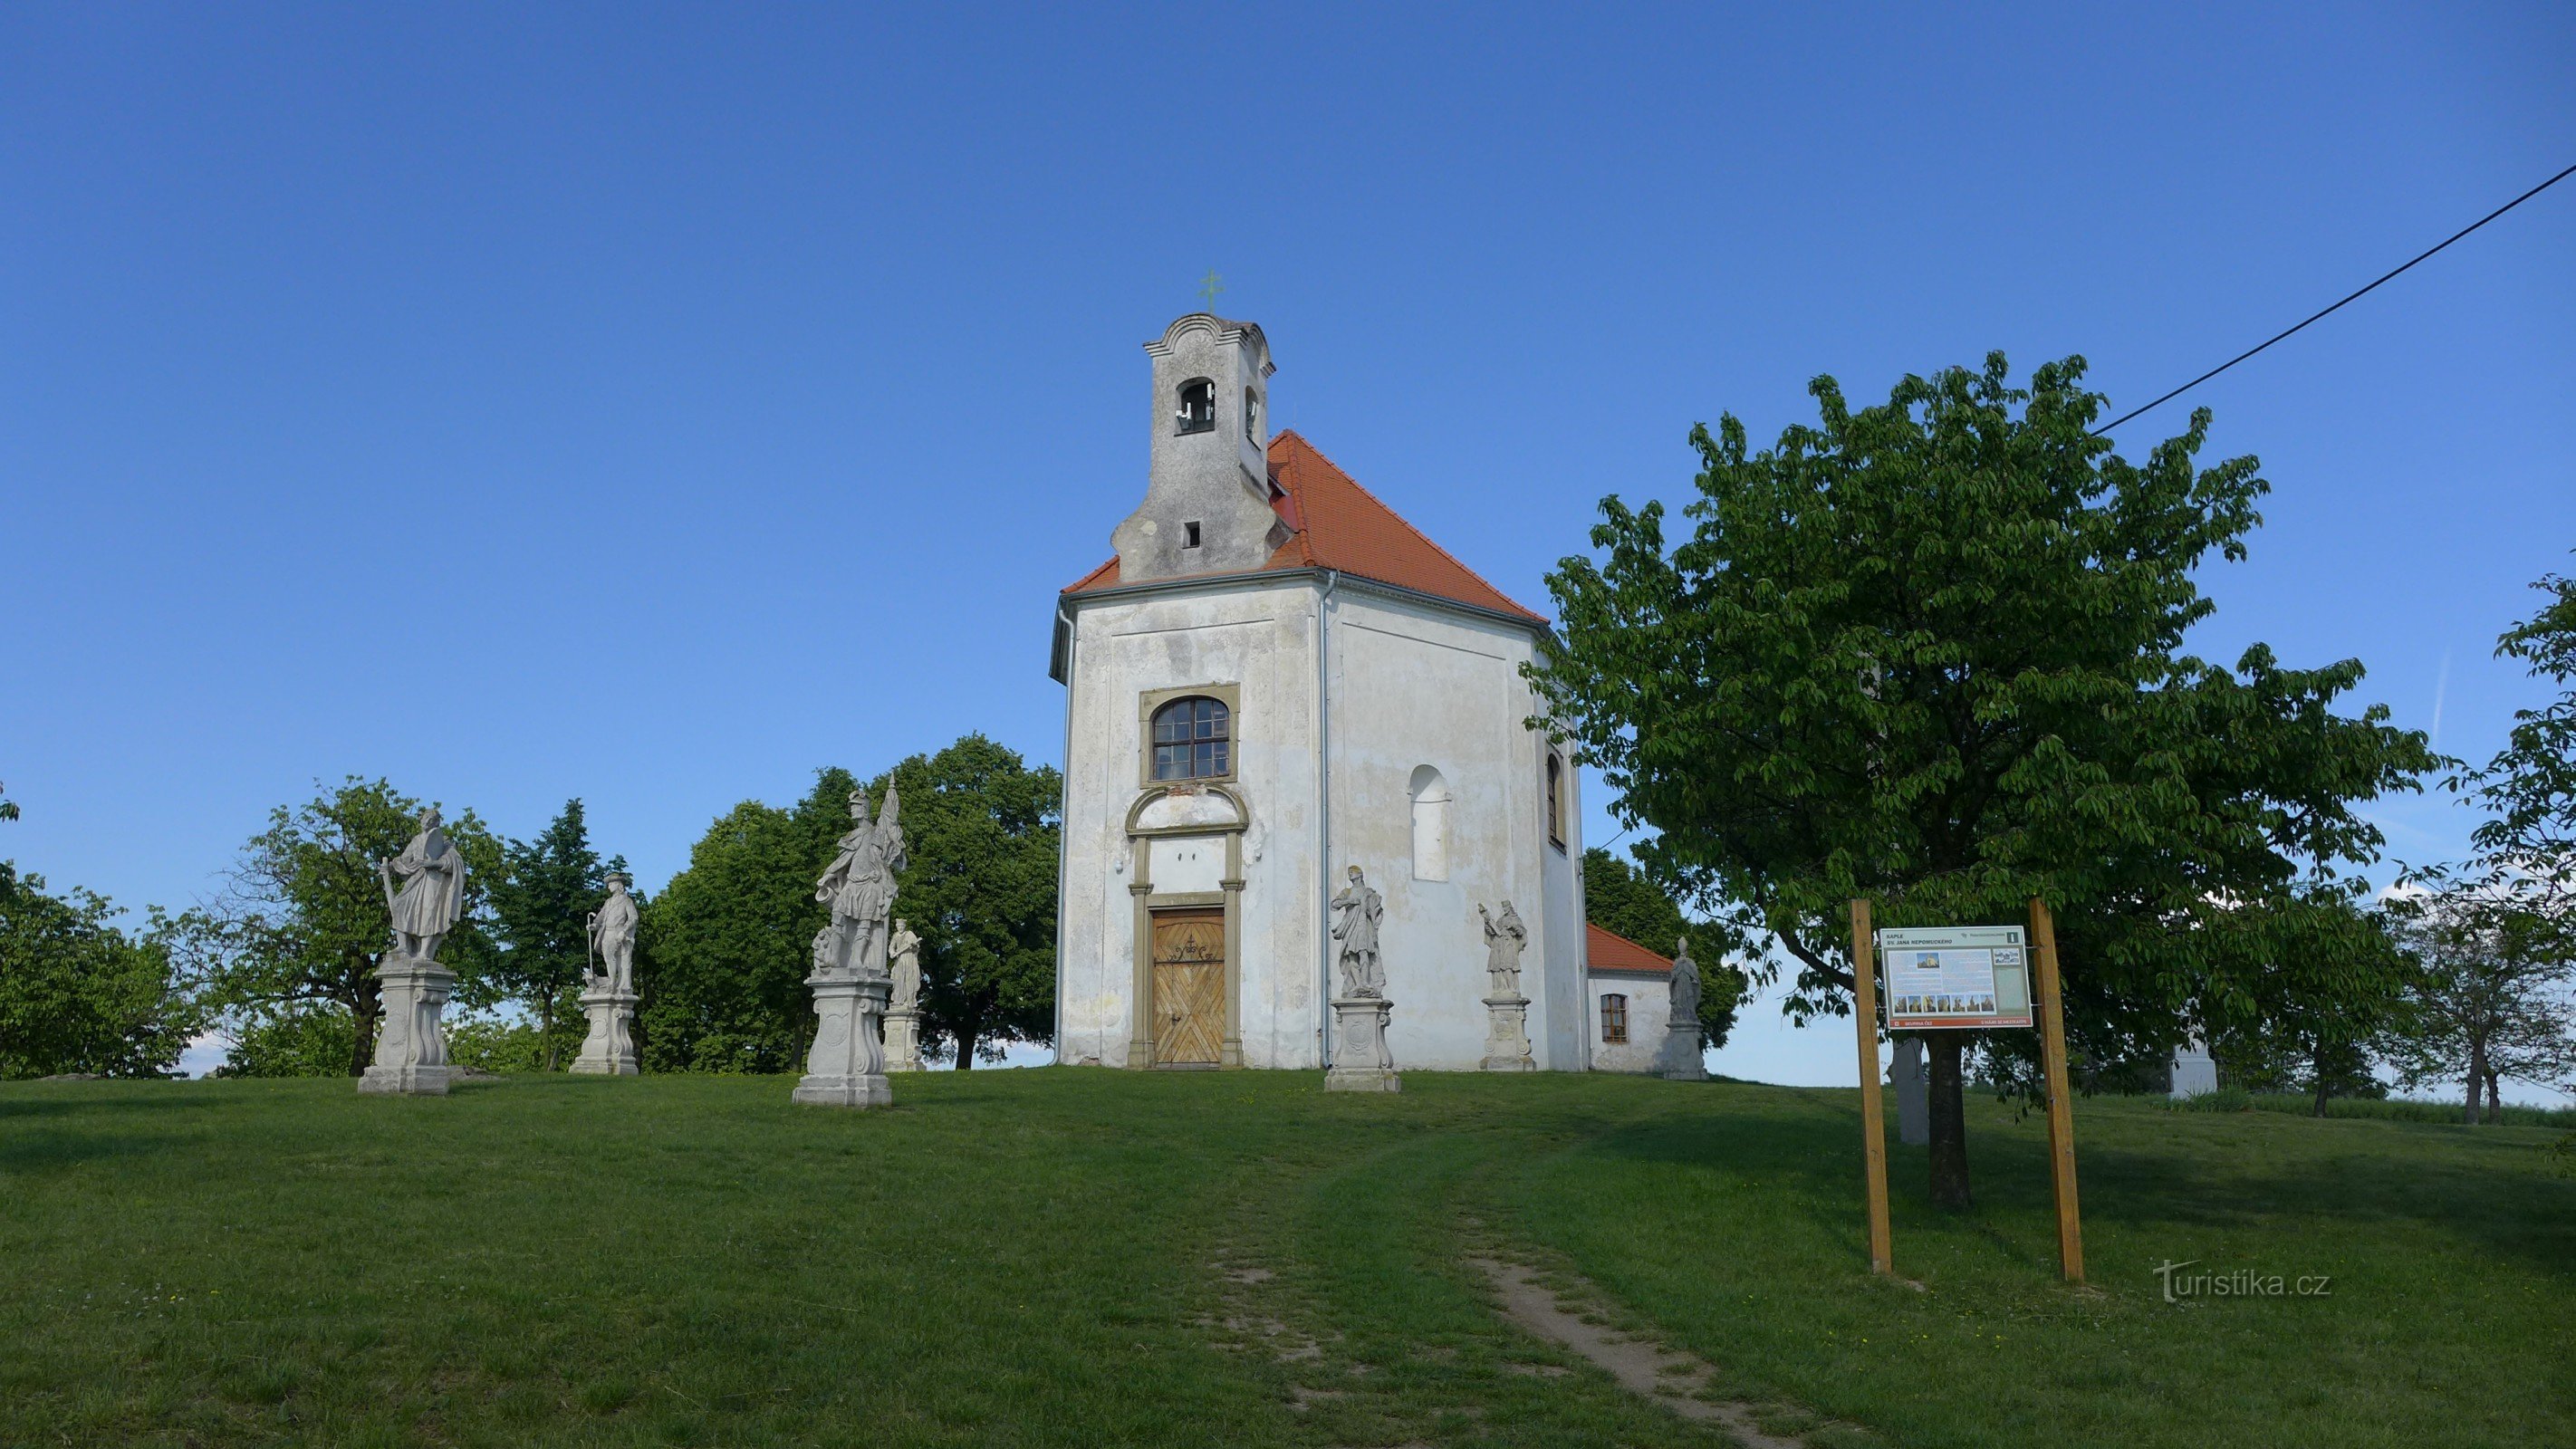 Rešice - Capela Sf. Jan Nepomucký